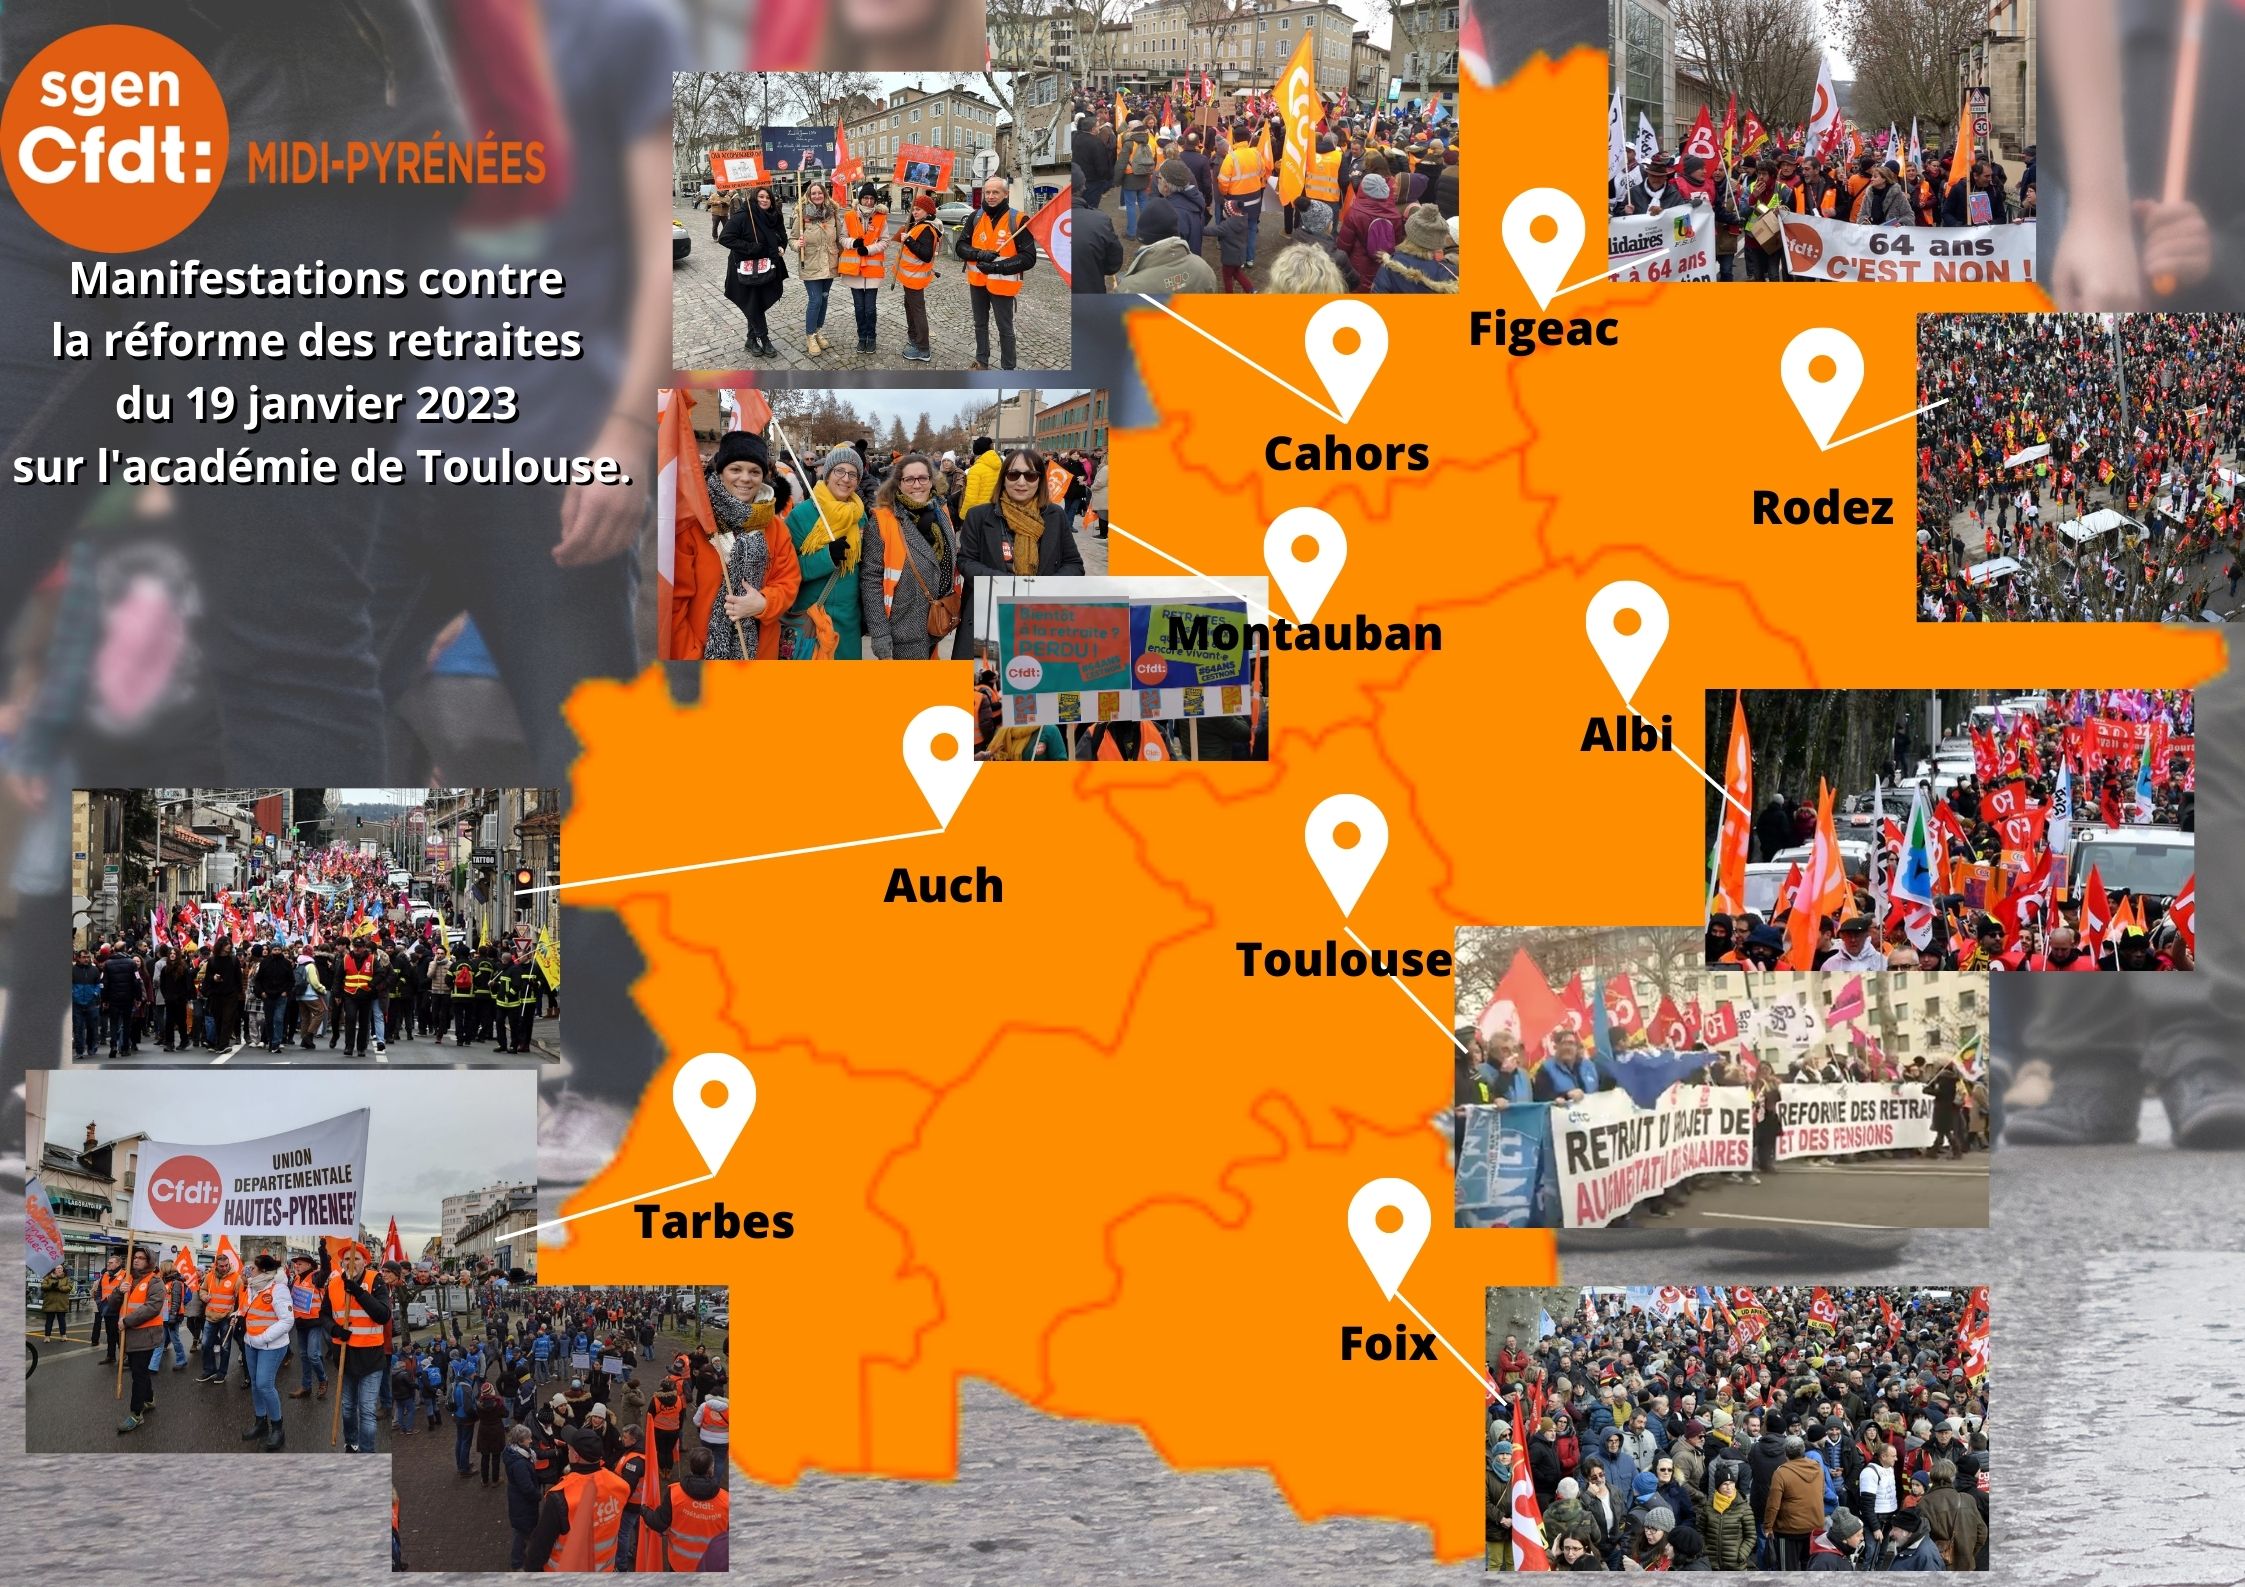 Mobilisation du 19/01/23 dans l'académie de Toulouse #SgenMidiPy